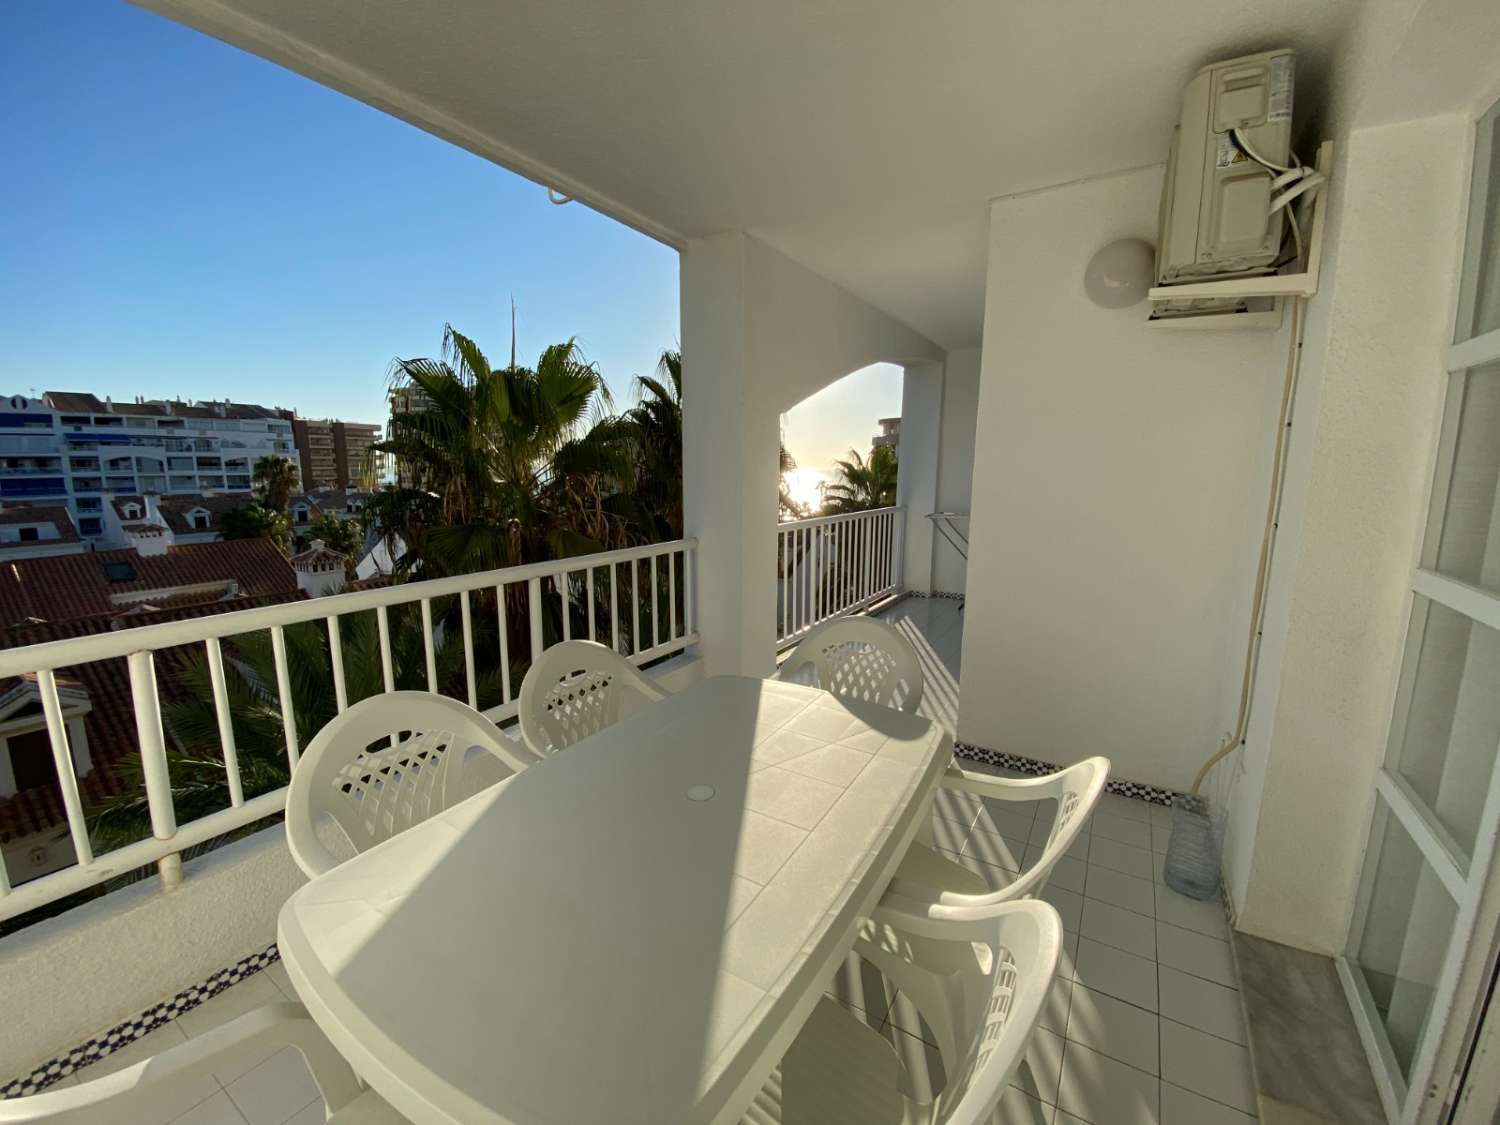 Fantastisk 3 værelses lejlighed på stranden i Fuengirola, pool, aircondition, wi-fi